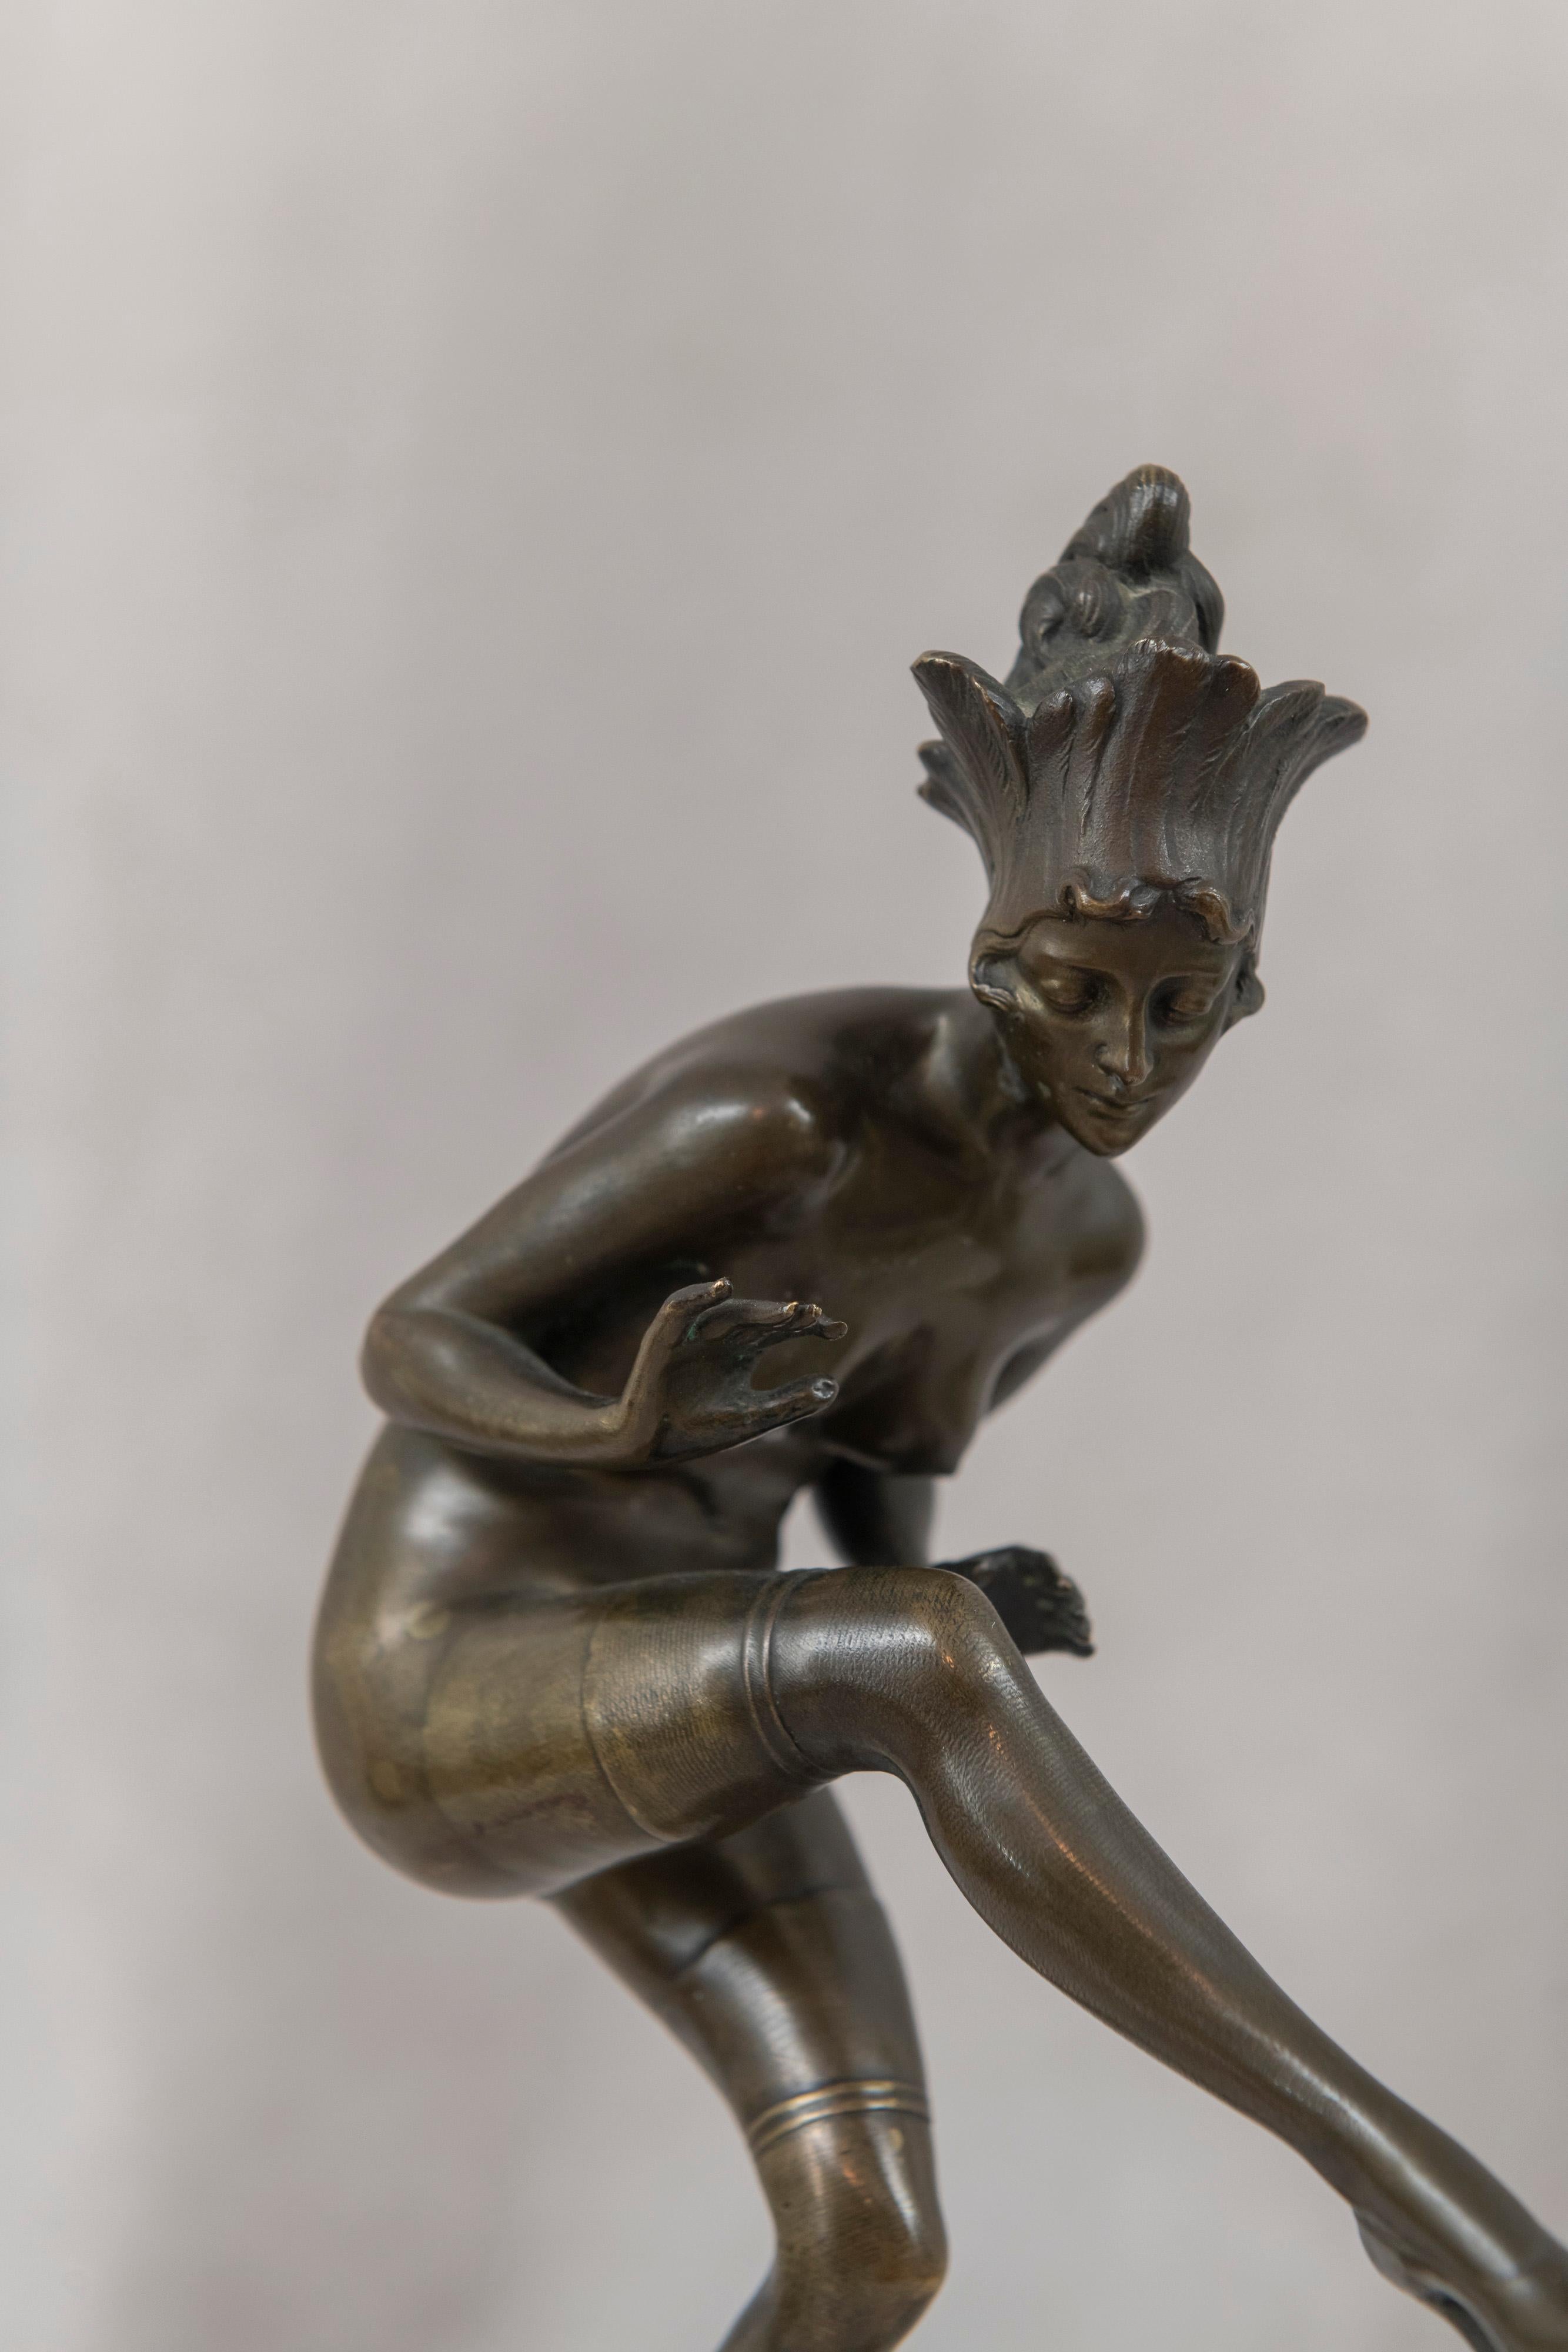  Très belle danseuse nue en bronze avec un grand mouvement. Bien qu'il ne soit pas signé, il s'agit clairement de l'œuvre de Bruno Zach, l'un des grands artistes Art déco de l'époque.
 Un bel exemple de la grâce et de la beauté de la période art